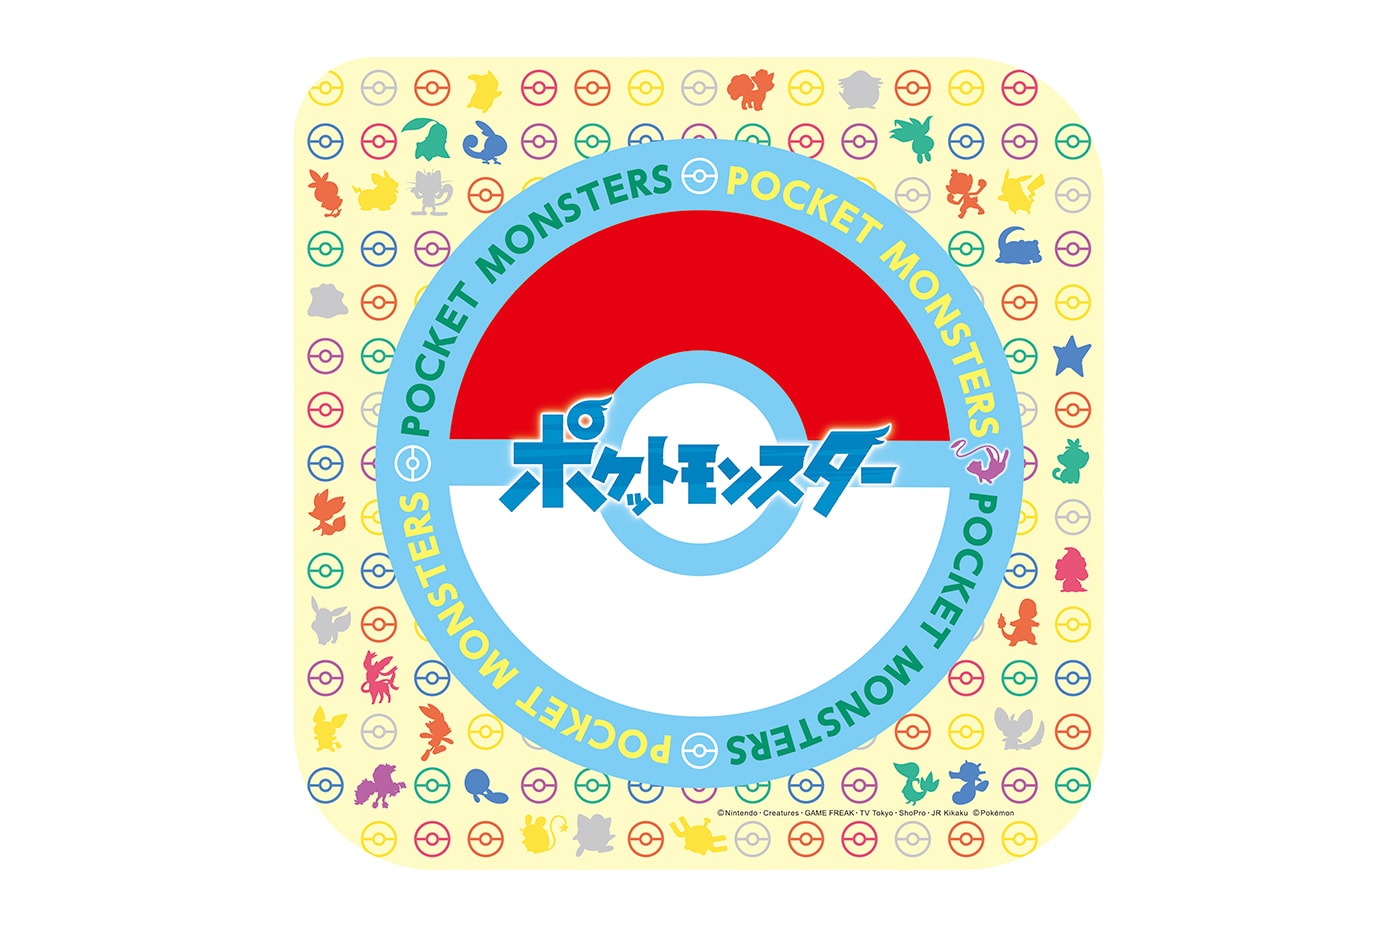 サーティーワンアイスクリームから毎年恒例の『ポケモン』コラボフレーバーが登場 Baskin Robbins 31 Pokemon Summer! Campaign info Japan Ice cream desserts 